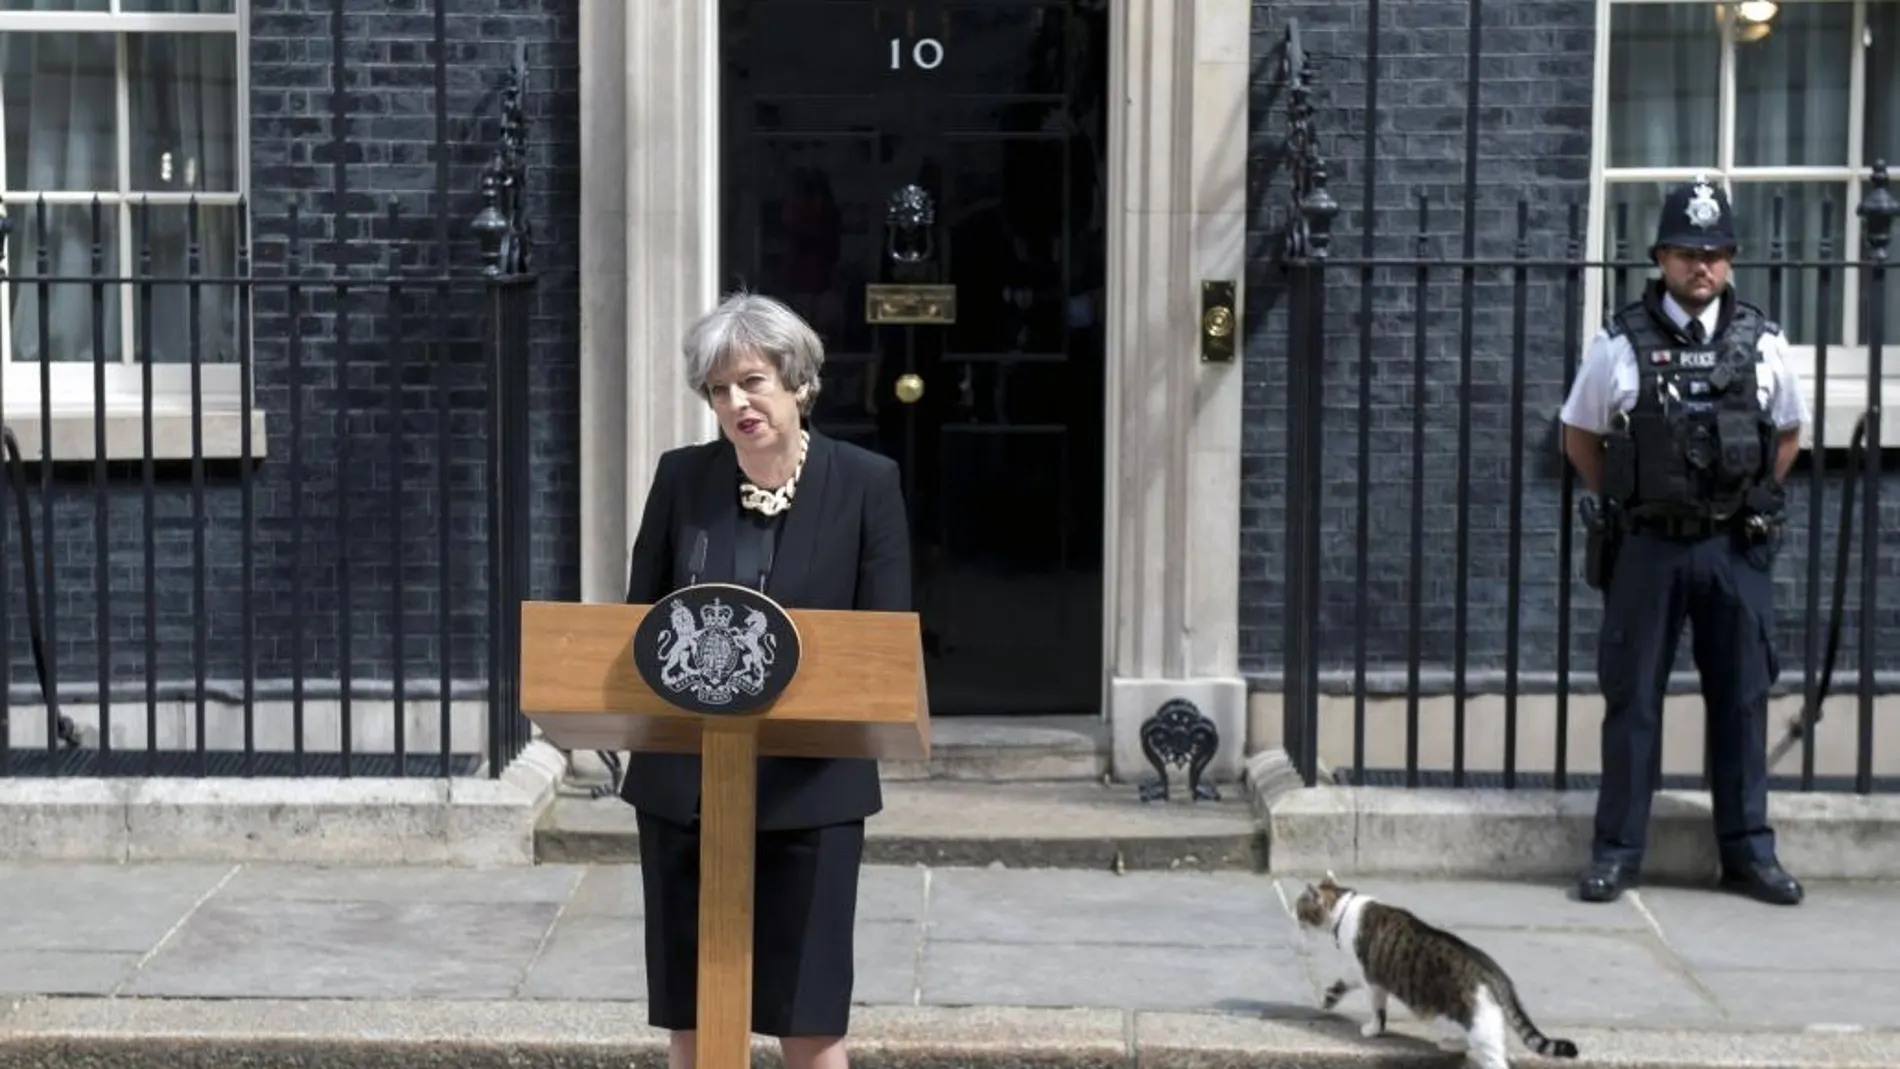 La primera ministra compareció ayer frente a Downing Street y anunció el endurecimiento de las leyes contra el extremismo yihadista